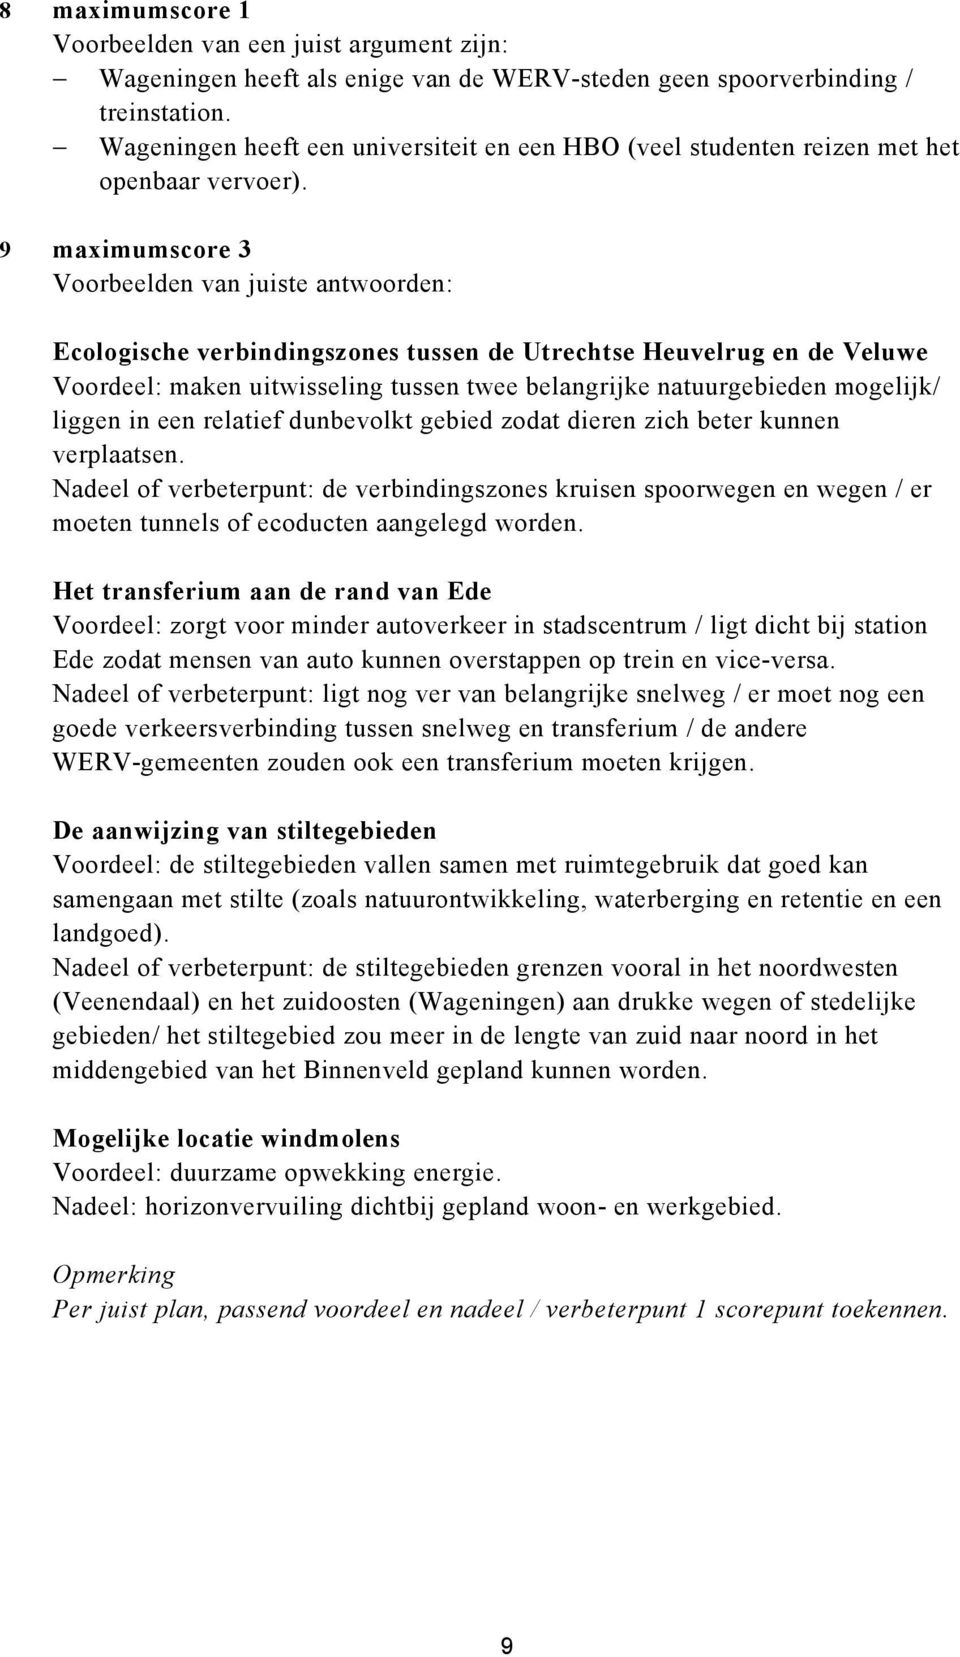 9 maximumscore 3 Voorbeelden van juiste antwoorden: Ecologische verbindingszones tussen de Utrechtse Heuvelrug en de Veluwe Voordeel: maken uitwisseling tussen twee belangrijke natuurgebieden